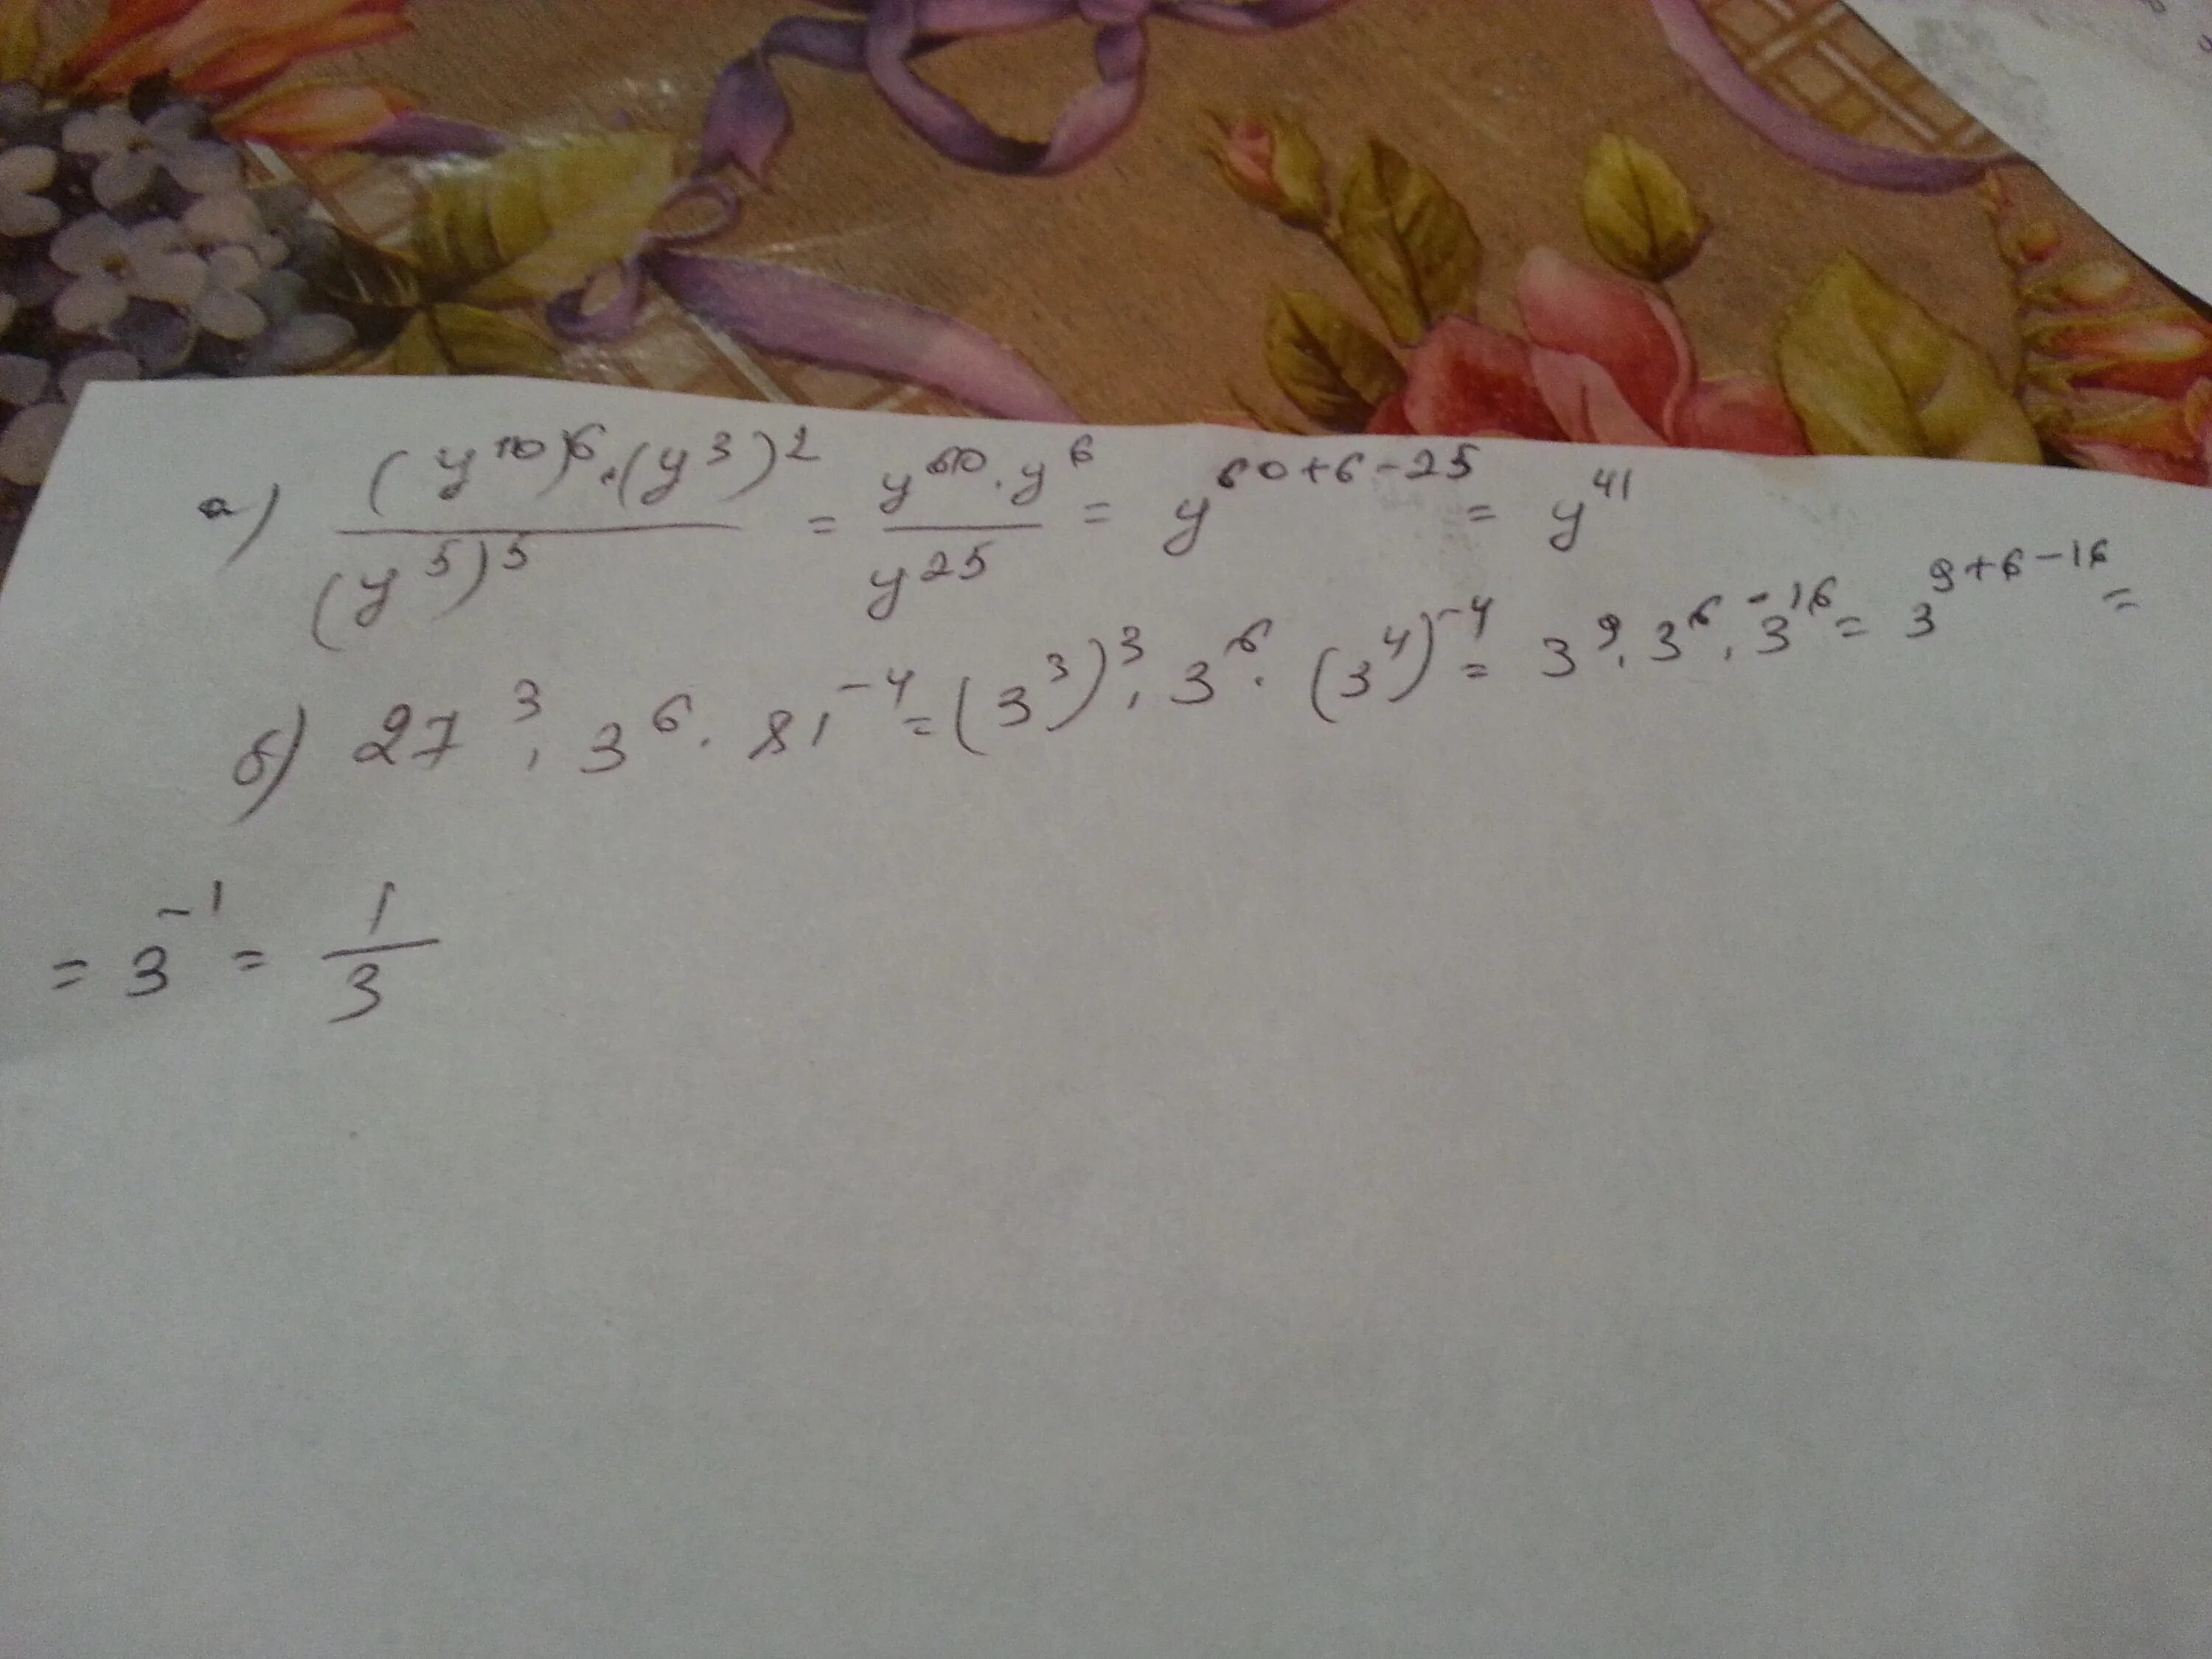 Произведение 7 9 и 1. Запишите произведение 7х и 3а+11. Запиши произведение в виде степени (c-y)*(c-y)*(c-y)*...*(c-y) n. Записать произведение в виде степени(-6)*(-6)*(-6)*(-6)*(-6)*(-6). Запишите произведение 7x и 3a+11.